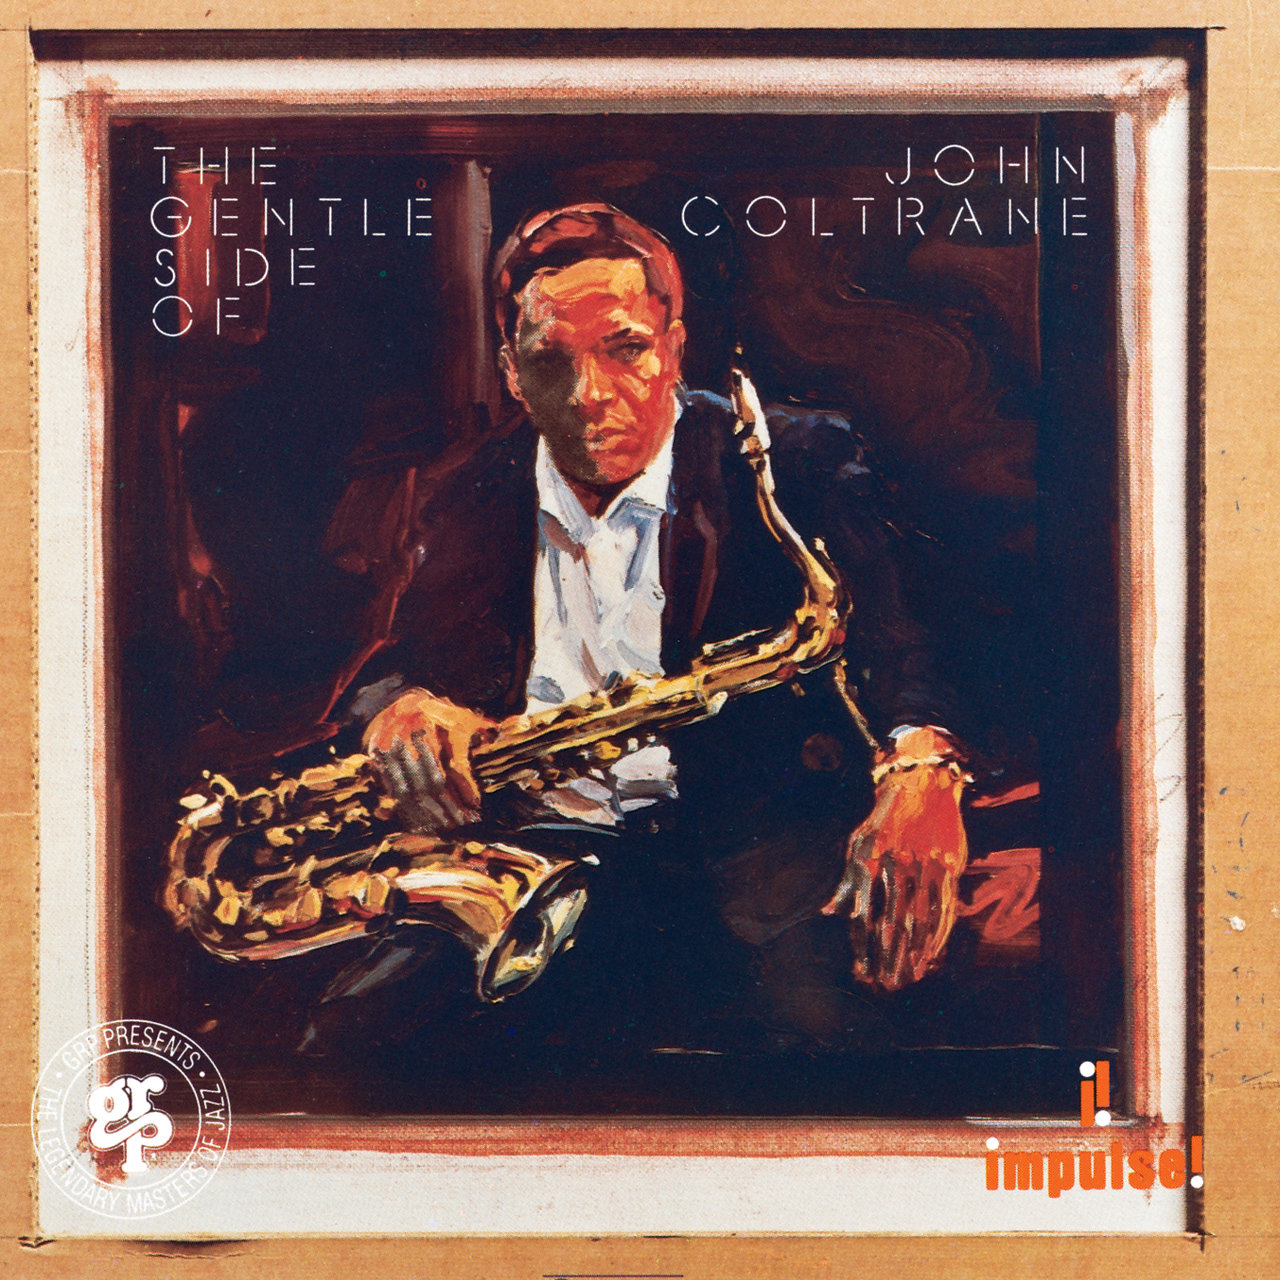 The Gentle Side Of John Coltrane [1975]